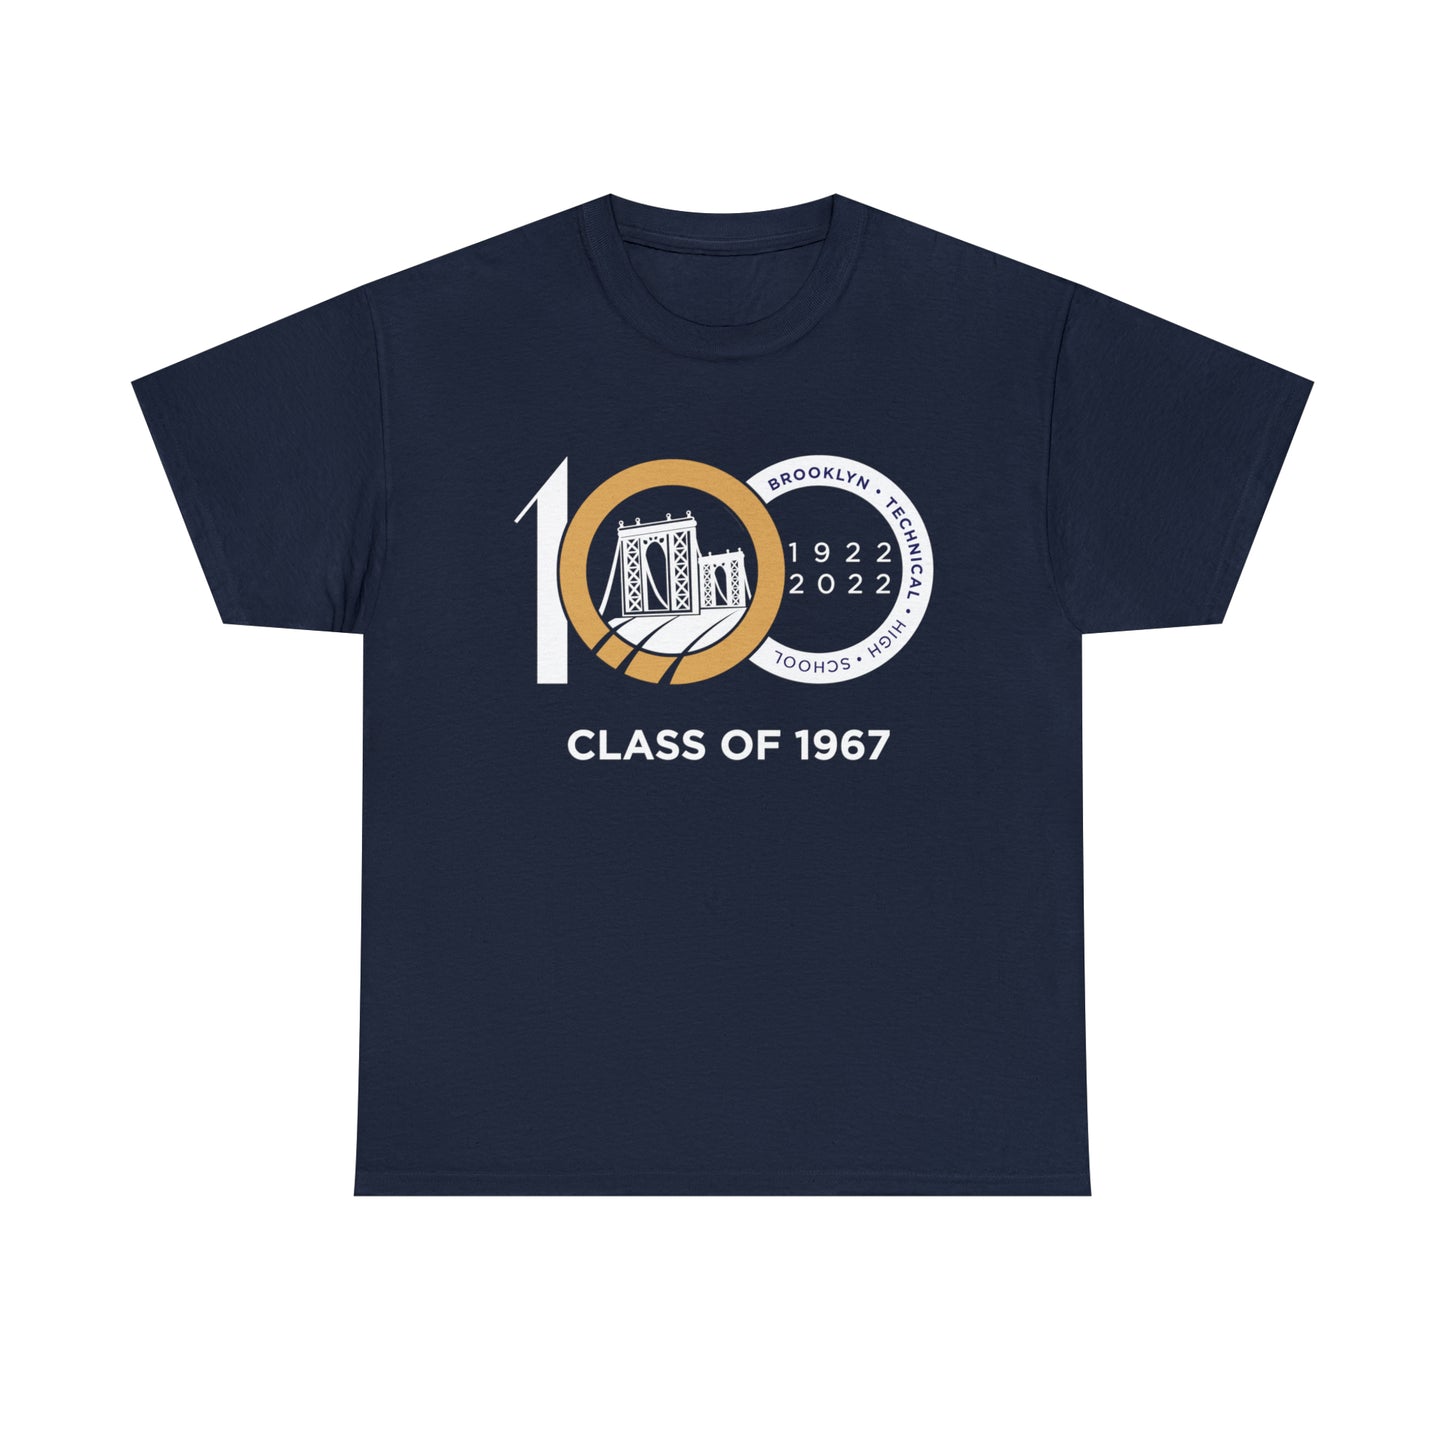 Centennial - Men's Heavy Cotton T-Shirt - Class Of 1967